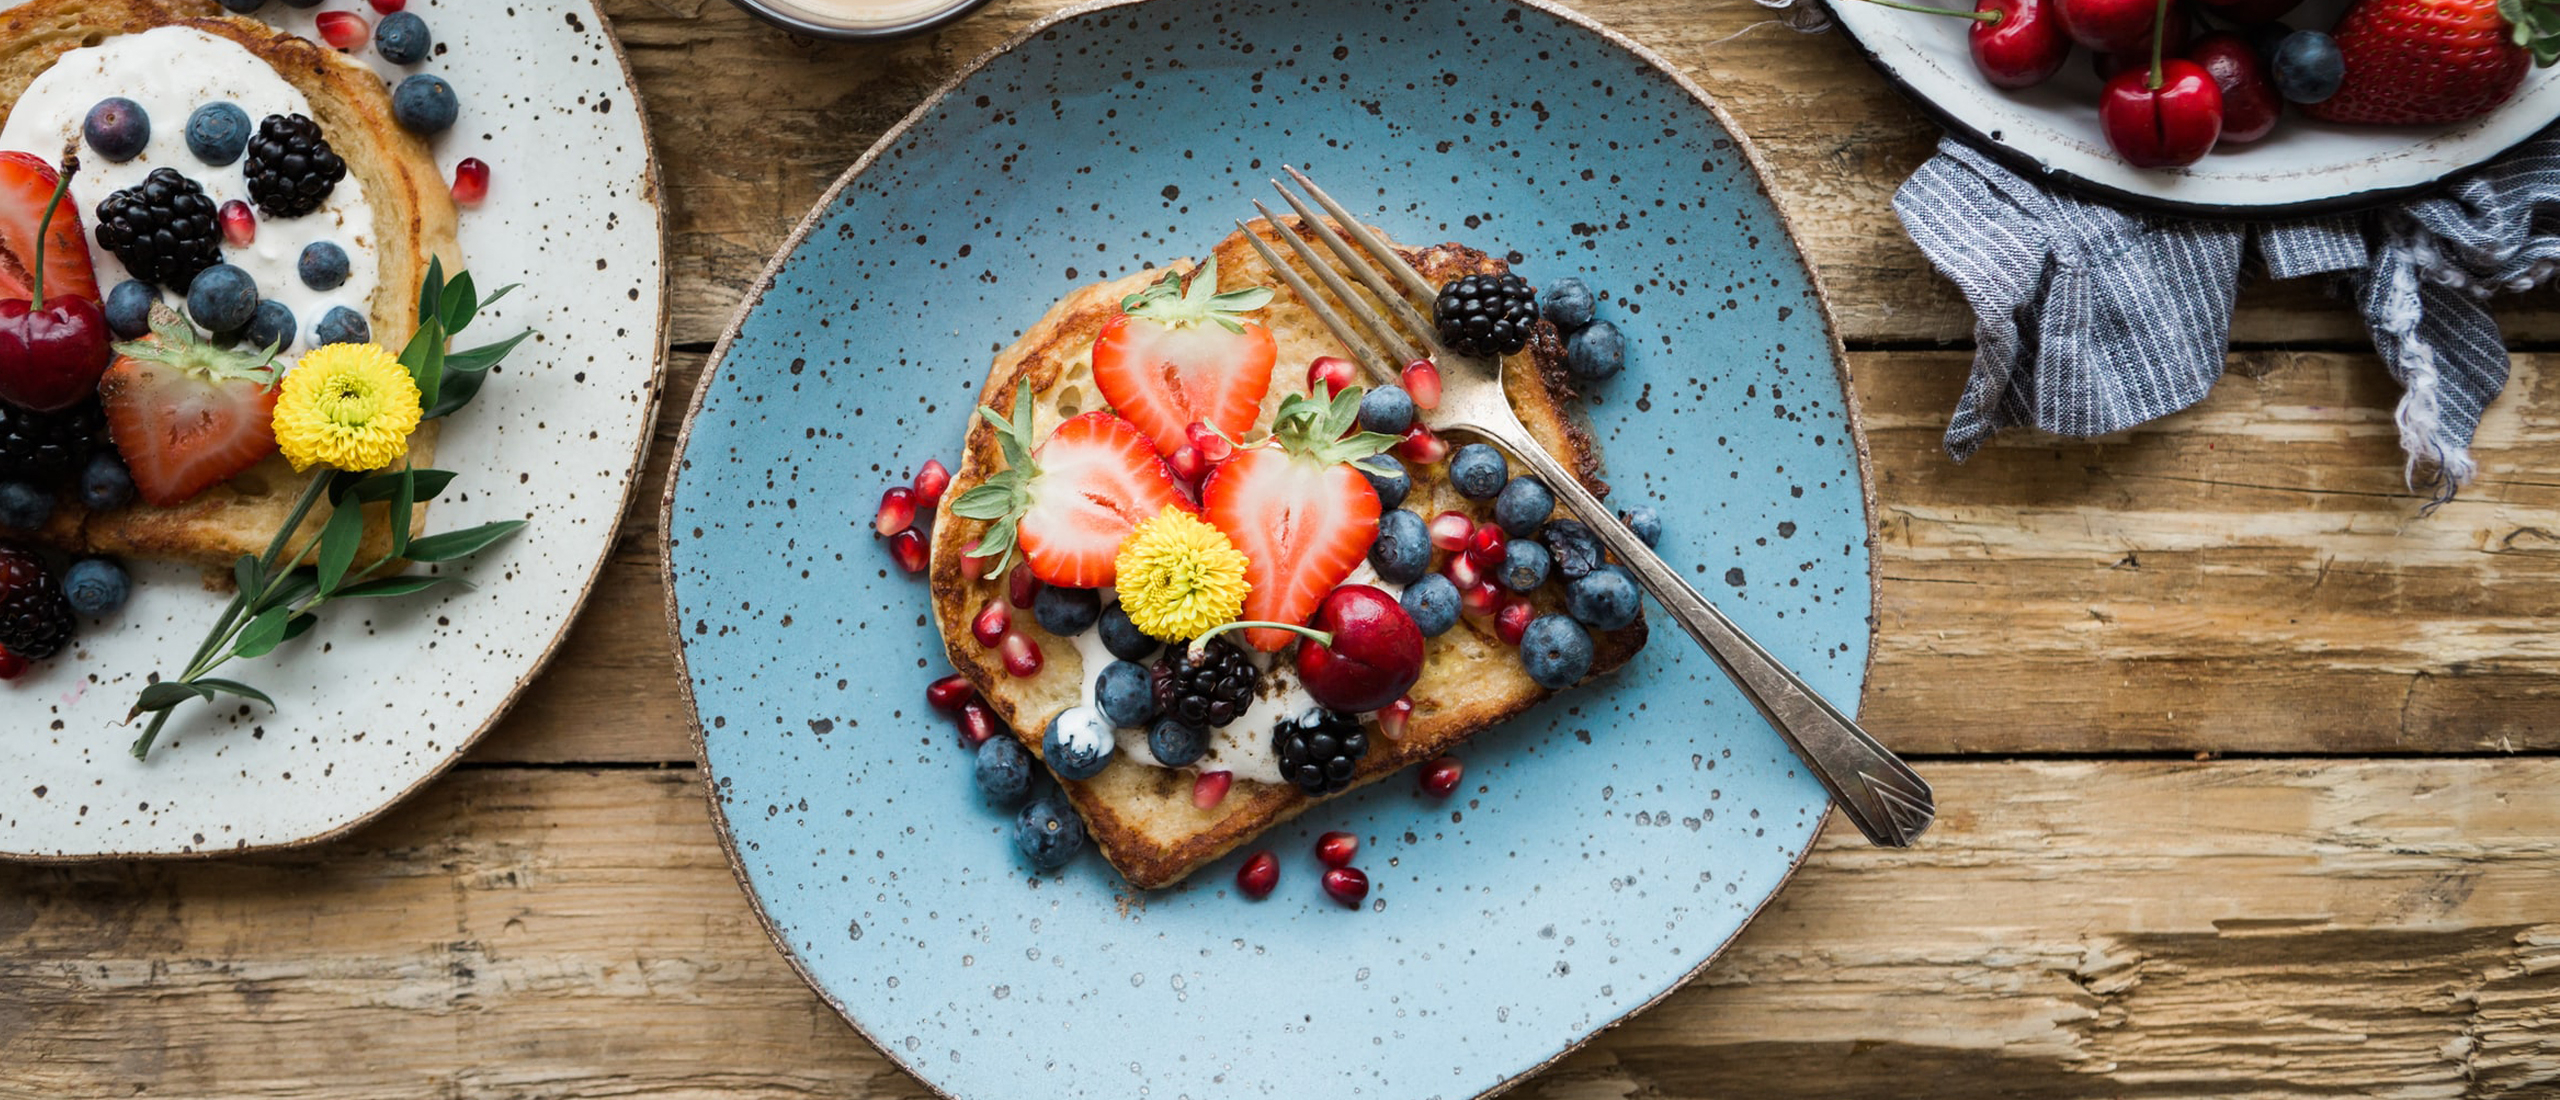 Weg met het vertrouwde ontbijtje! Waarom is gevarieerd eten belangrijk?